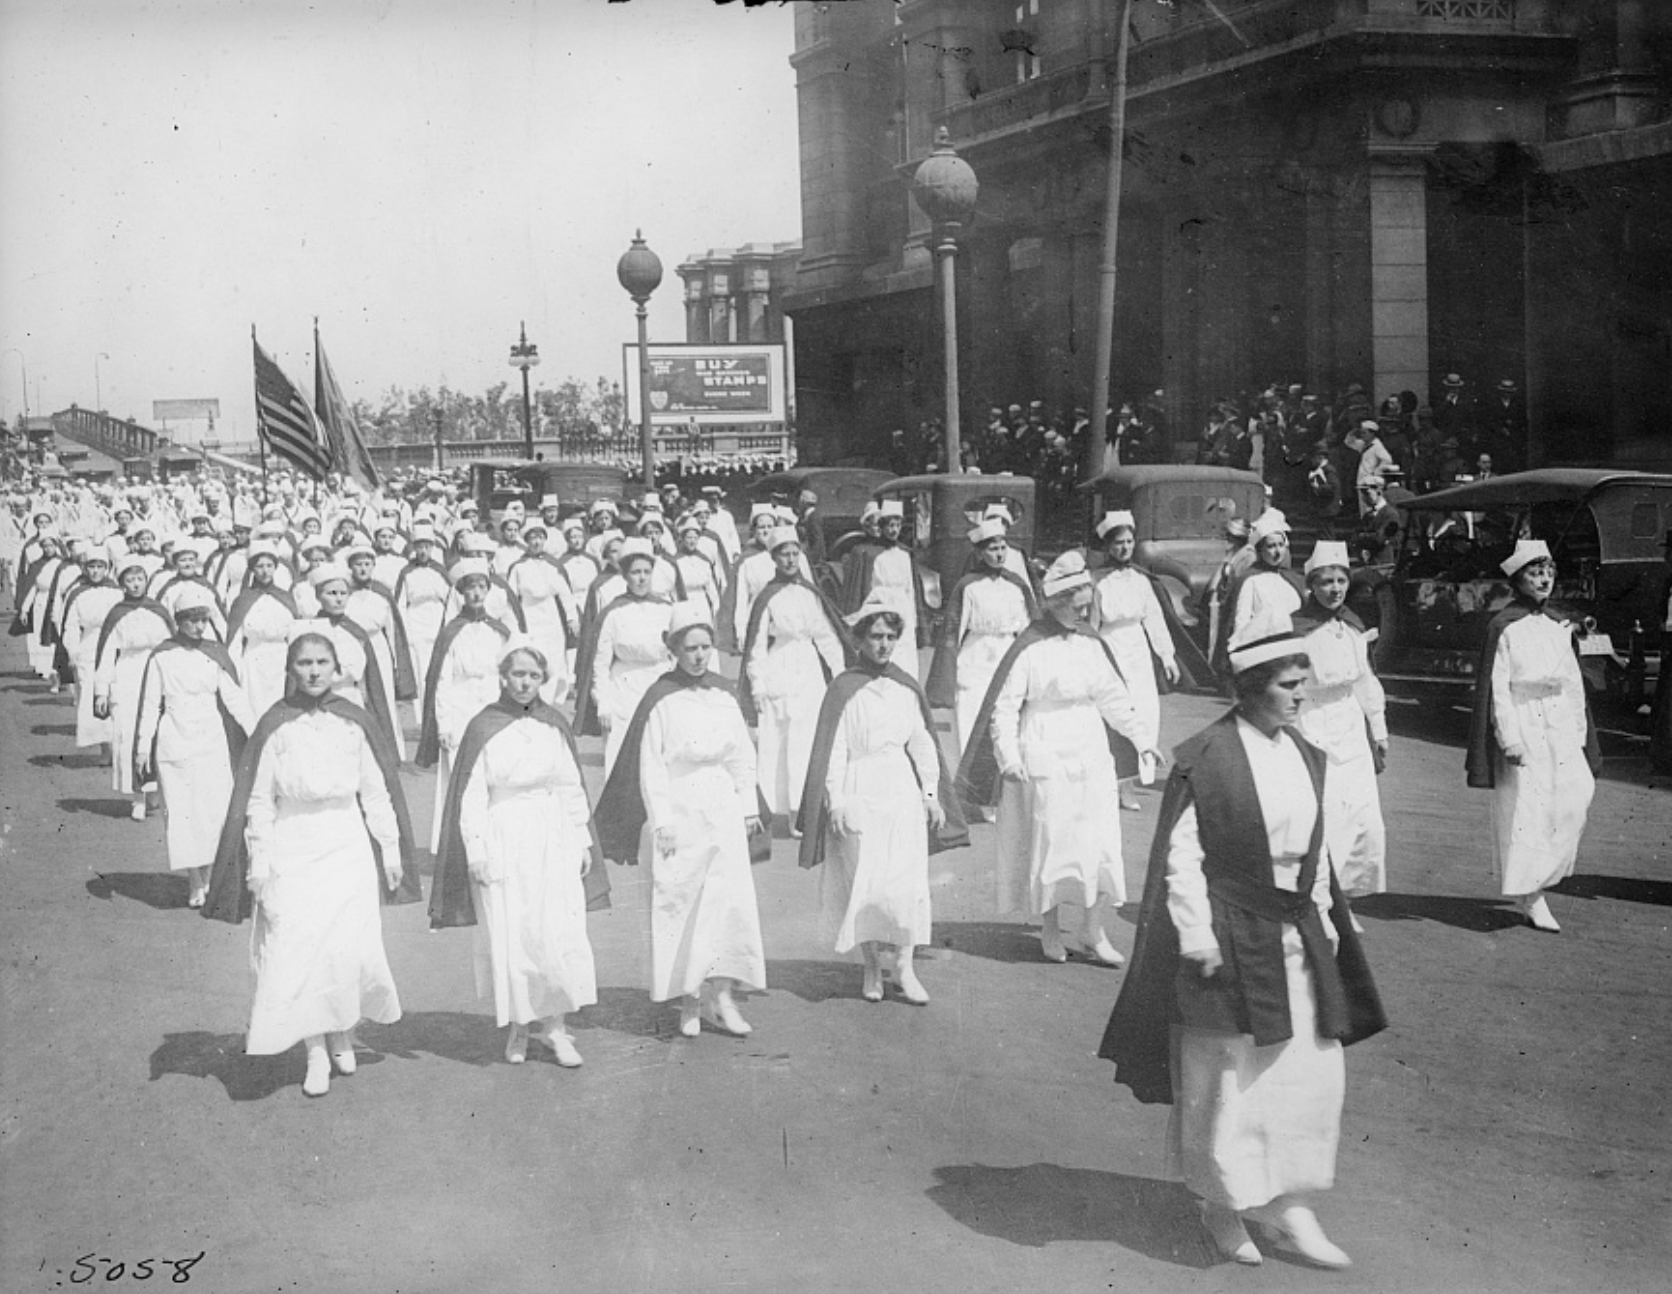 parade of nurses in uniform